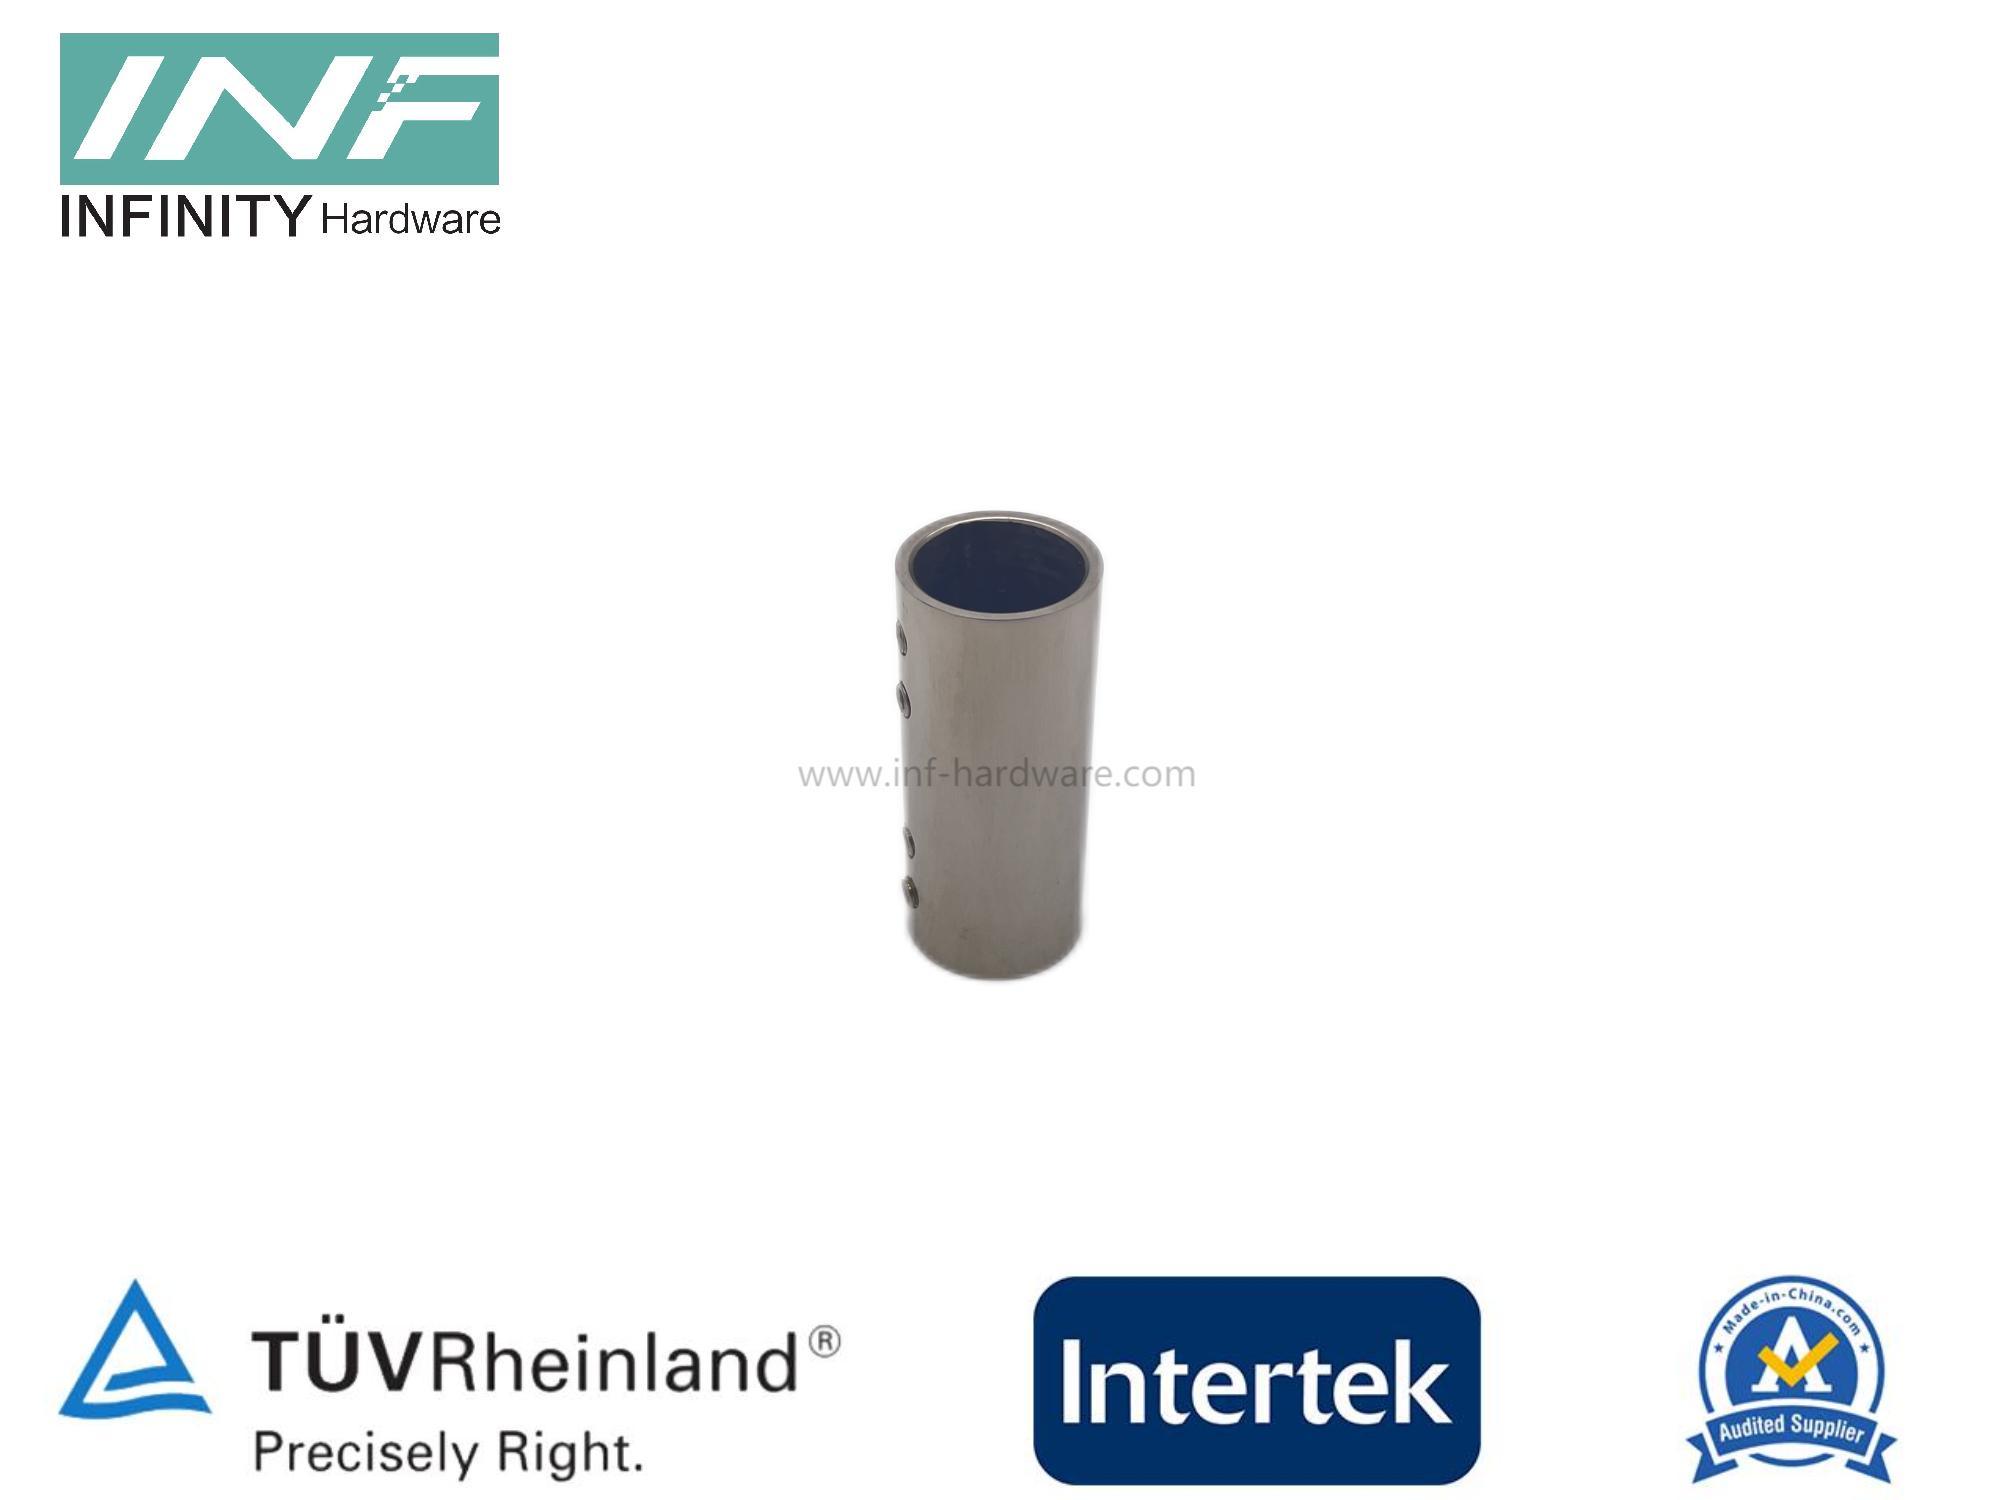 Conector de tubo a tubo de latón y acero inoxidable de 180° para montaje de vidrio con función ajustable